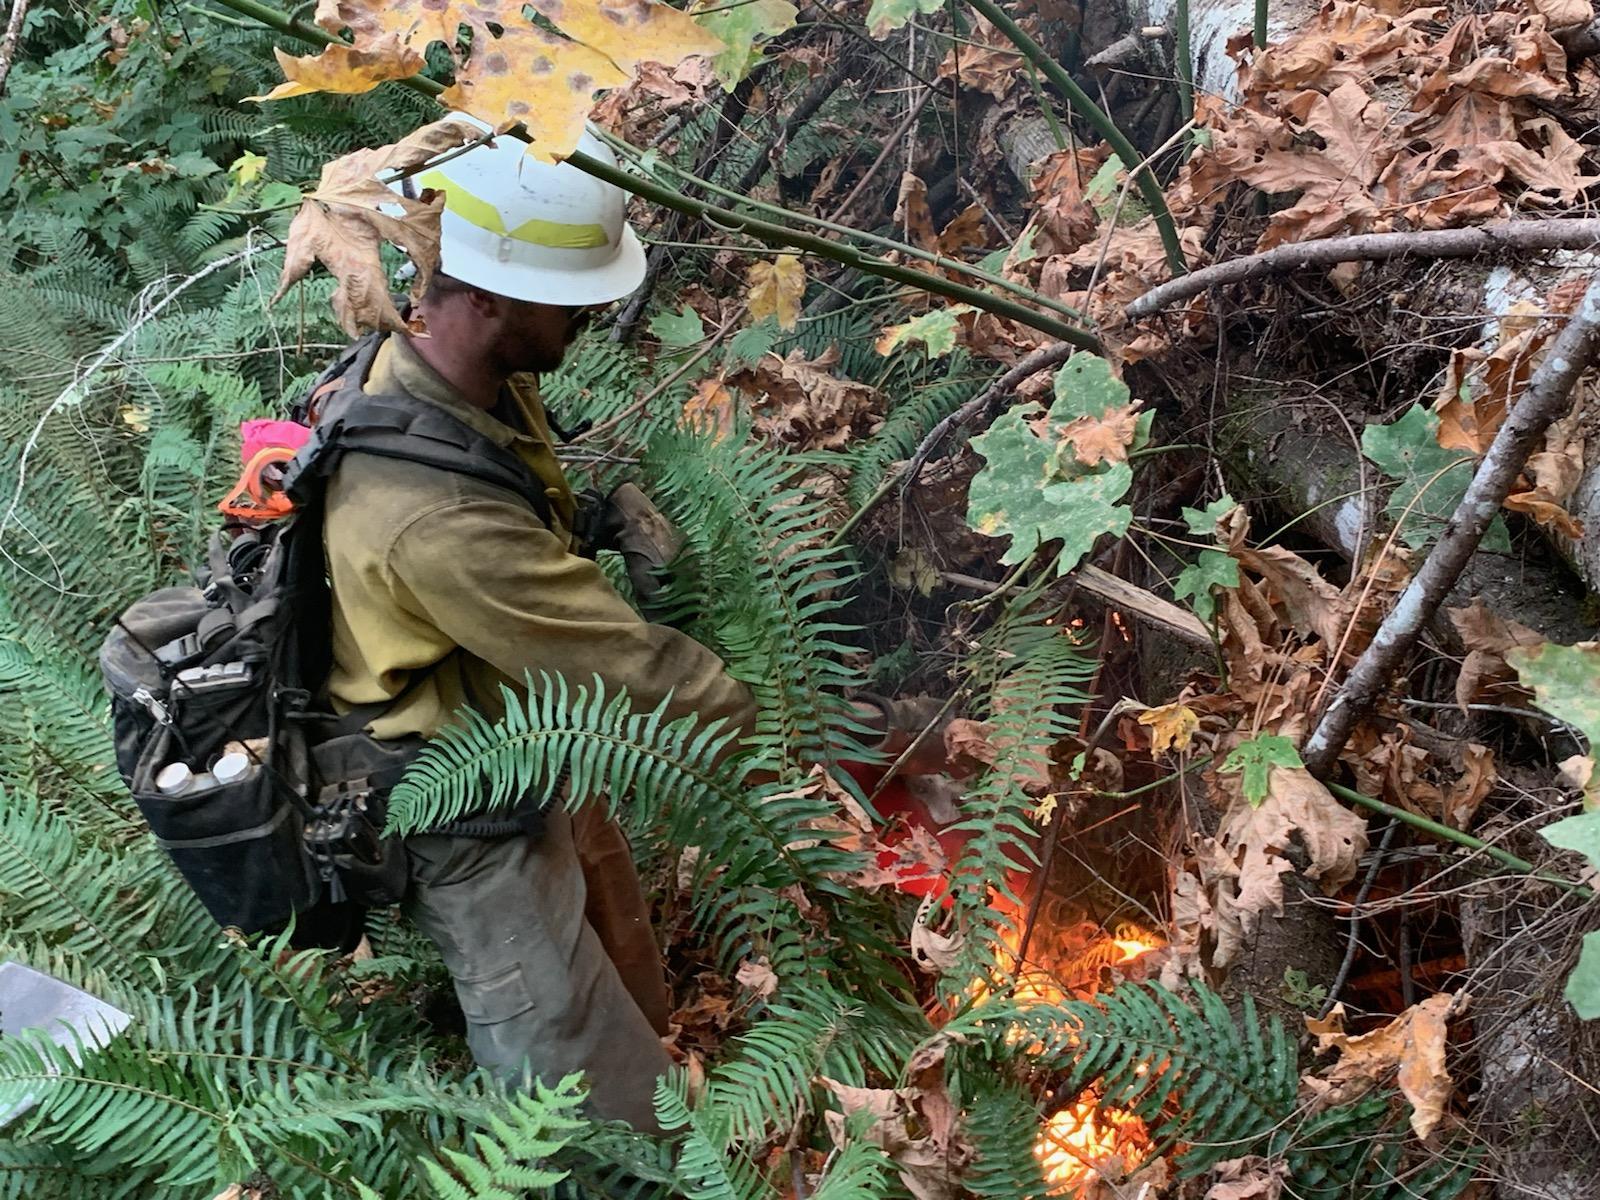 Firefighters work in heavy vegetation.